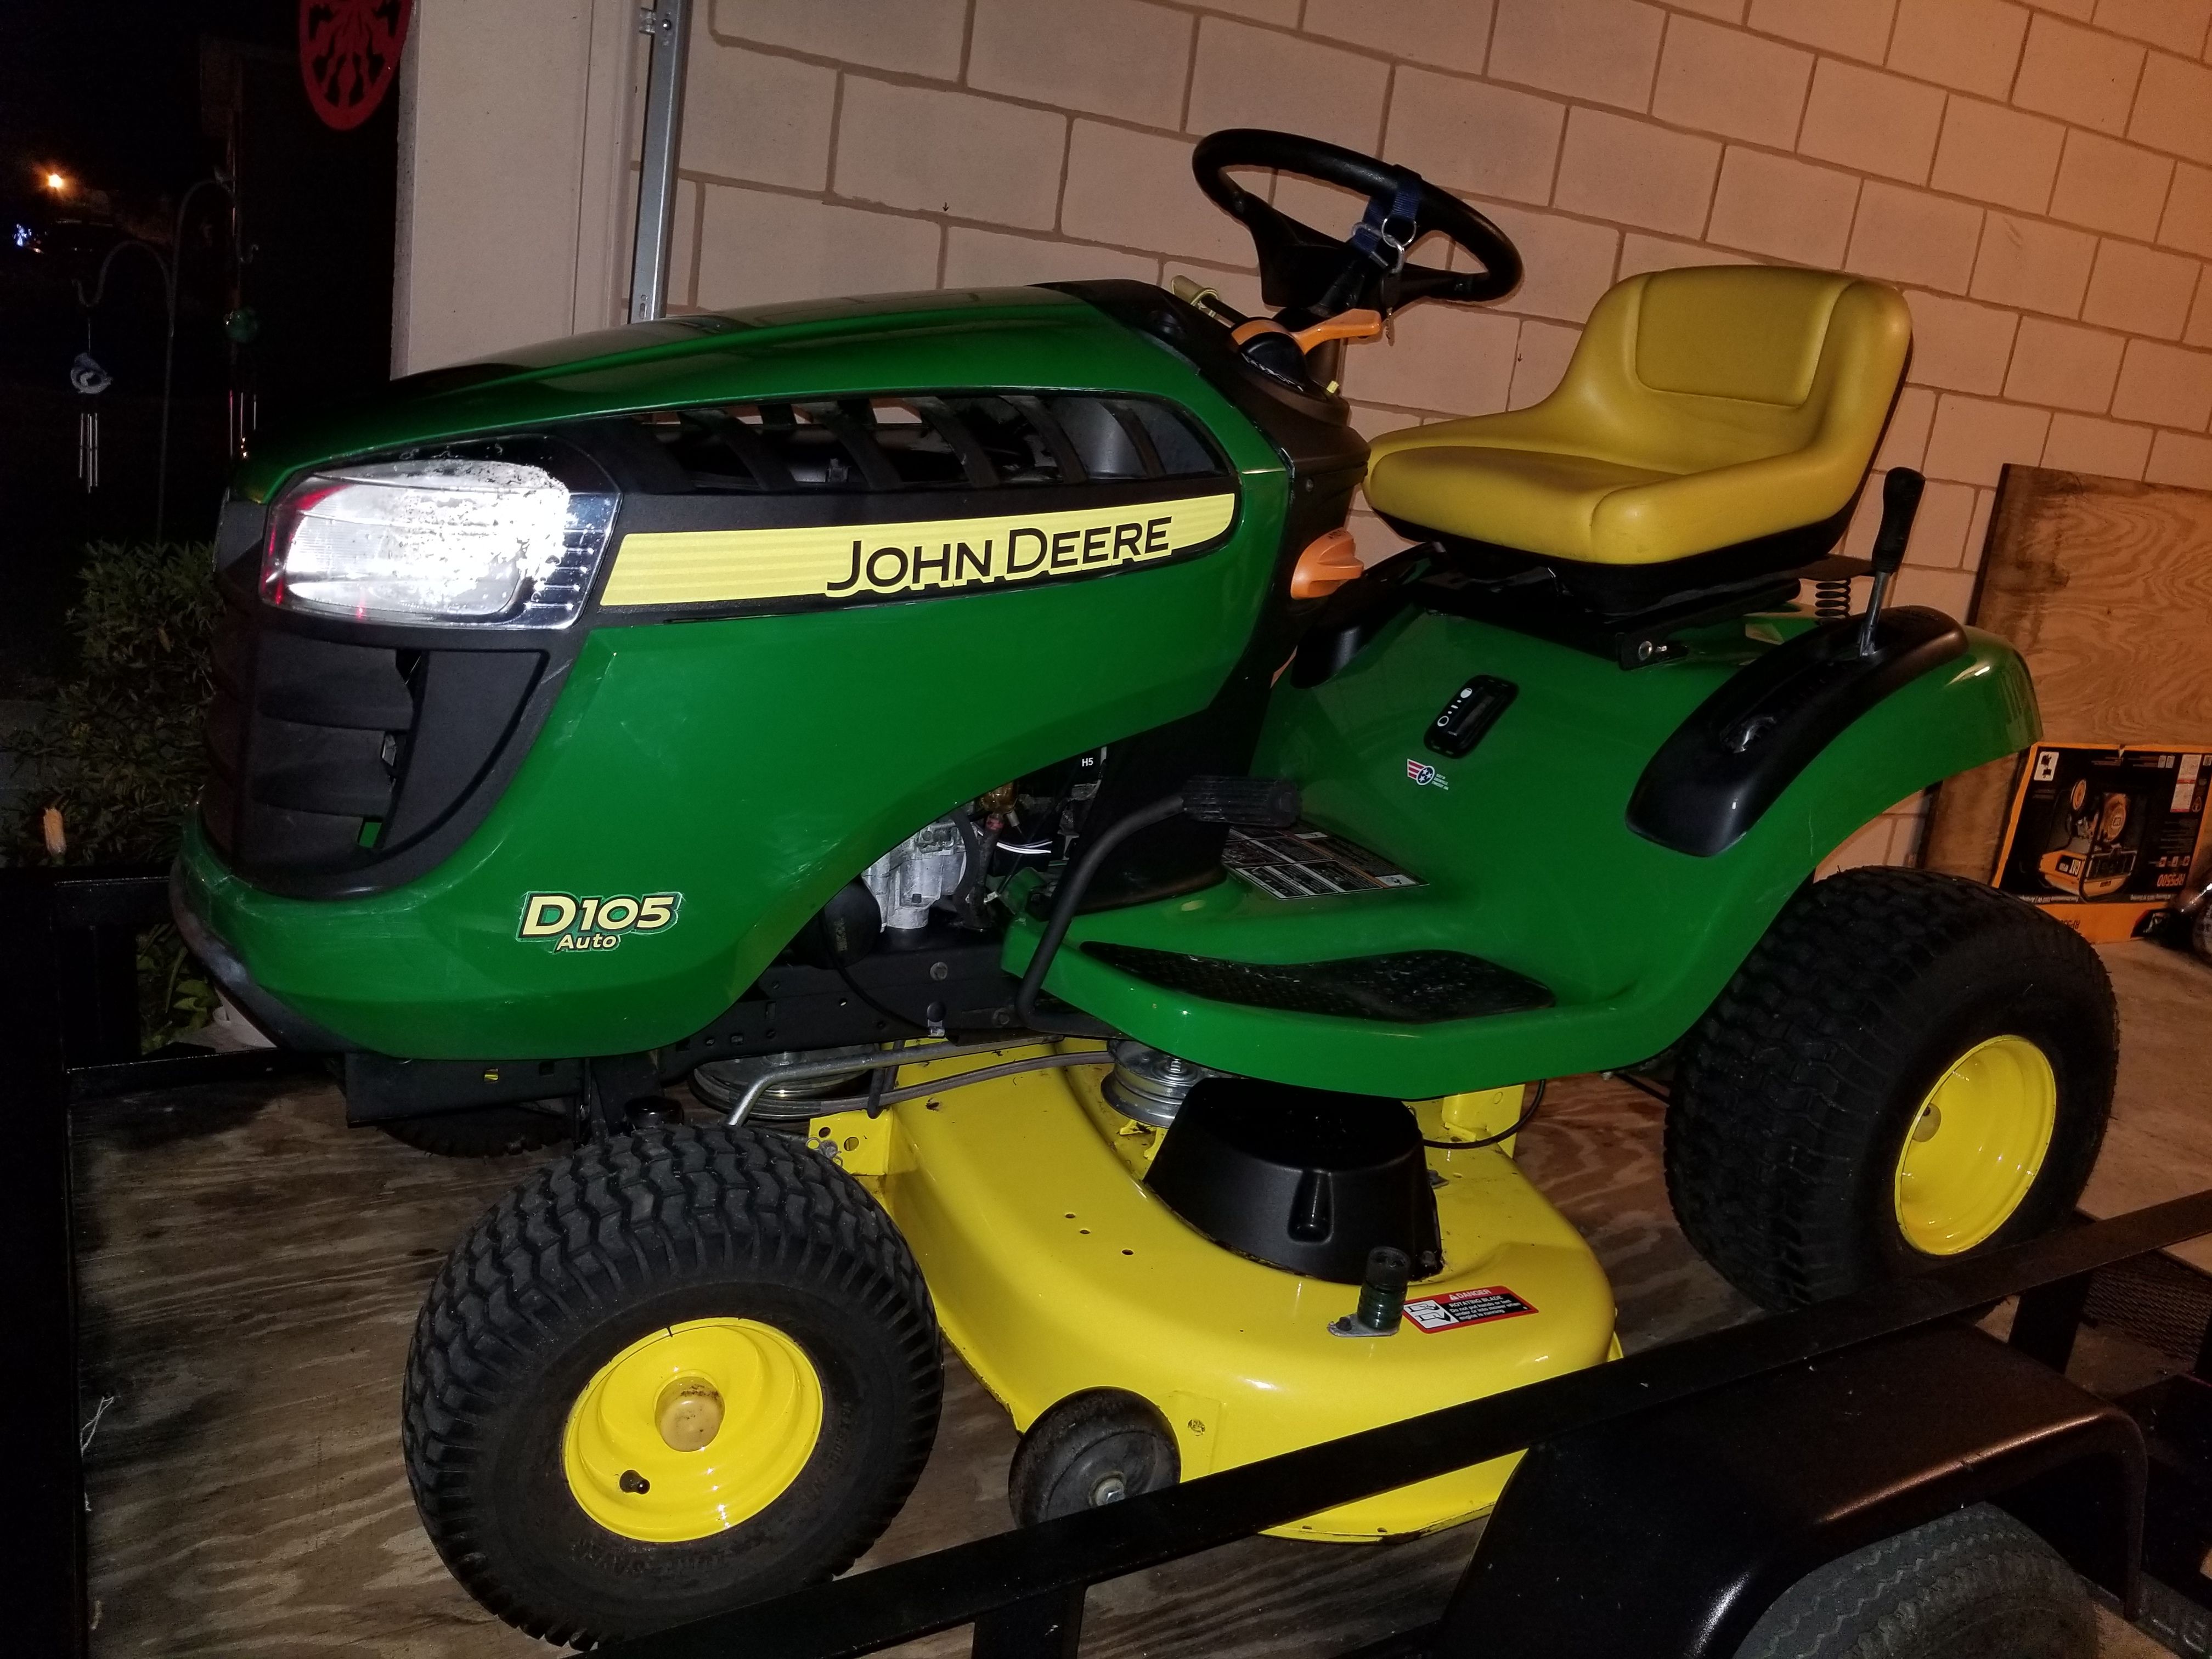 John Deere Lawn mower